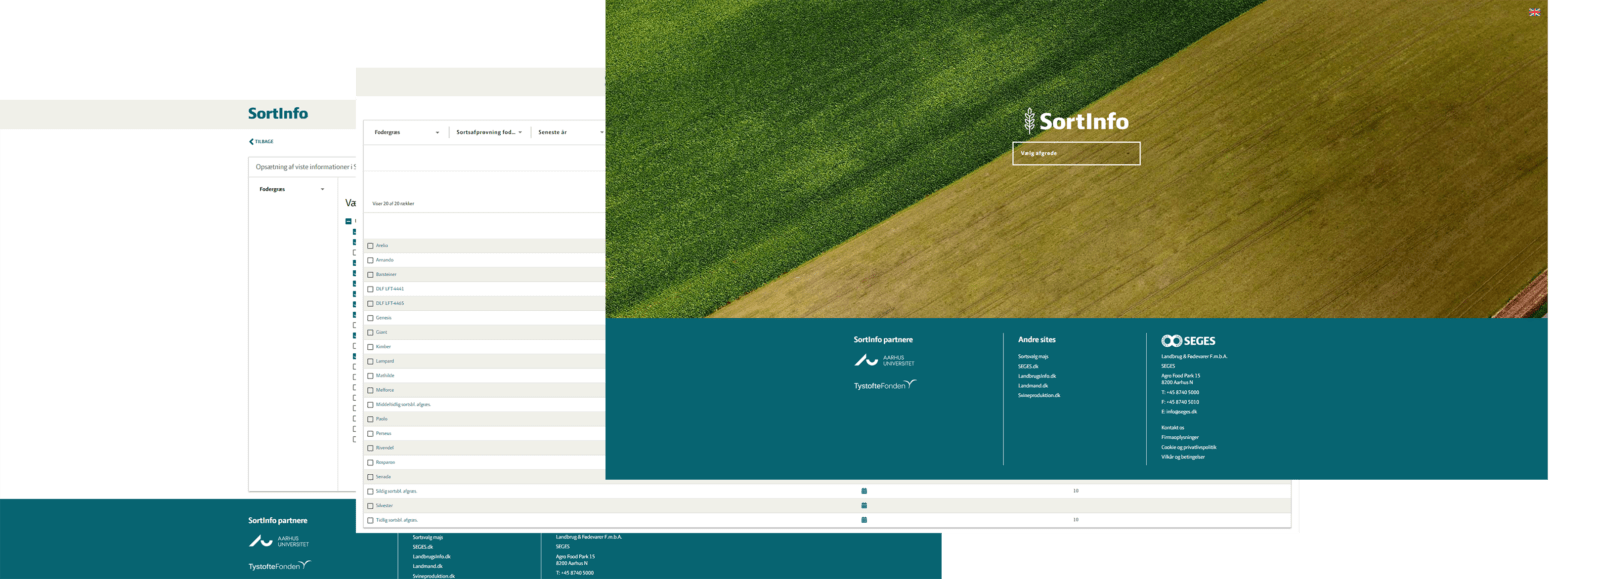 SortInfos webplatform der viser hvilke afgrøder man skal dyrke